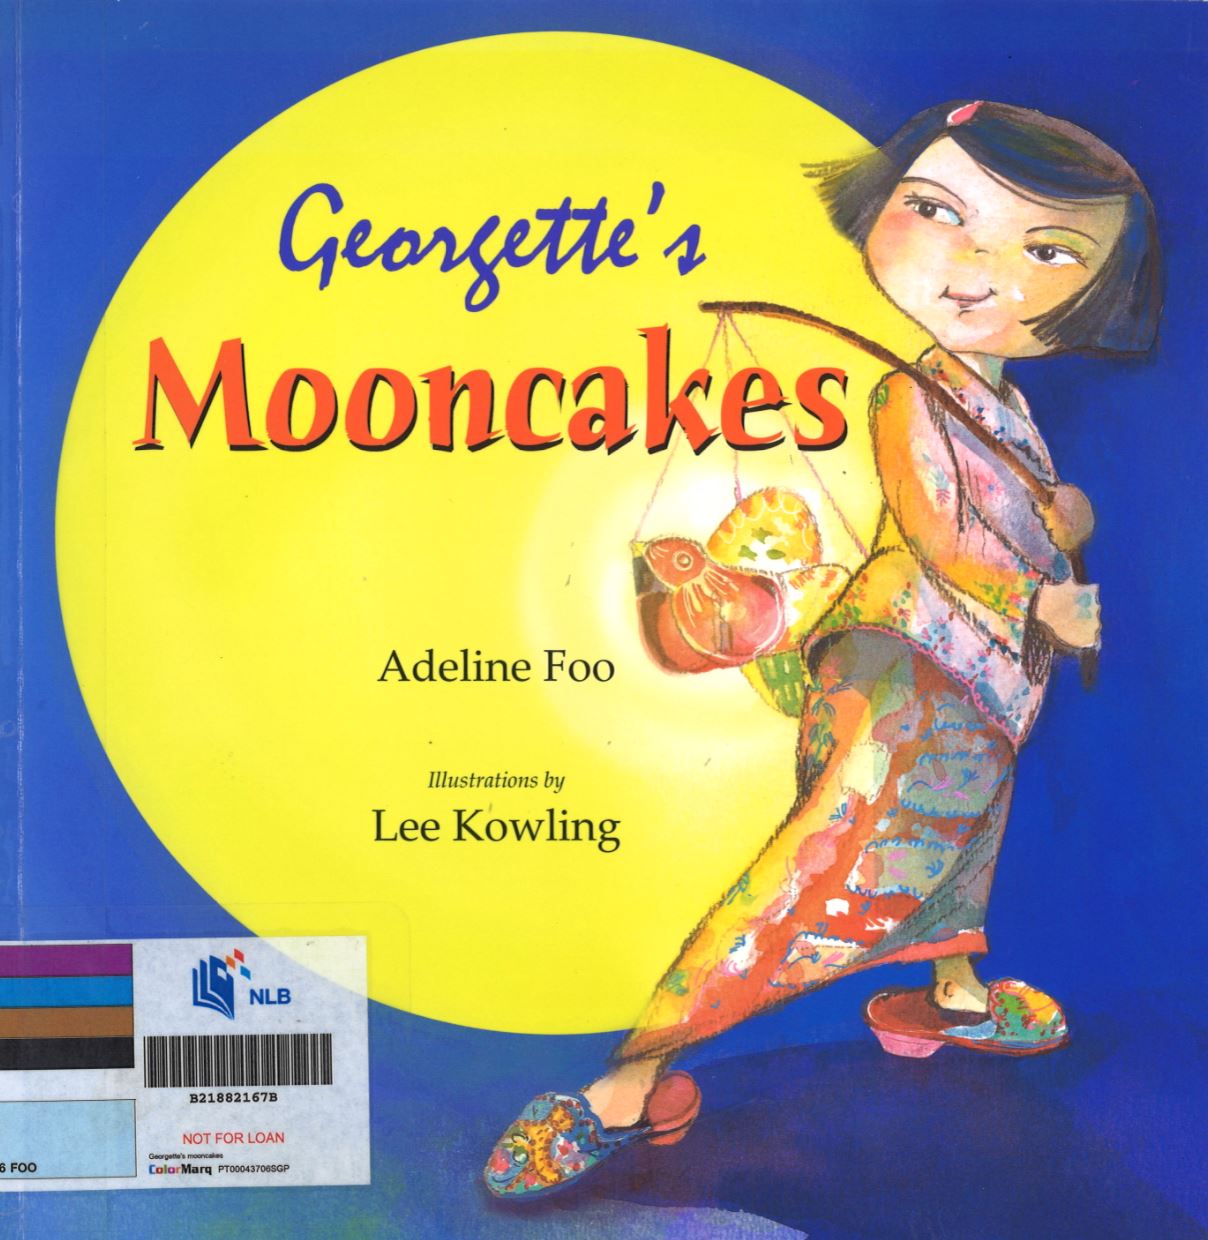 Georgette's mooncakes